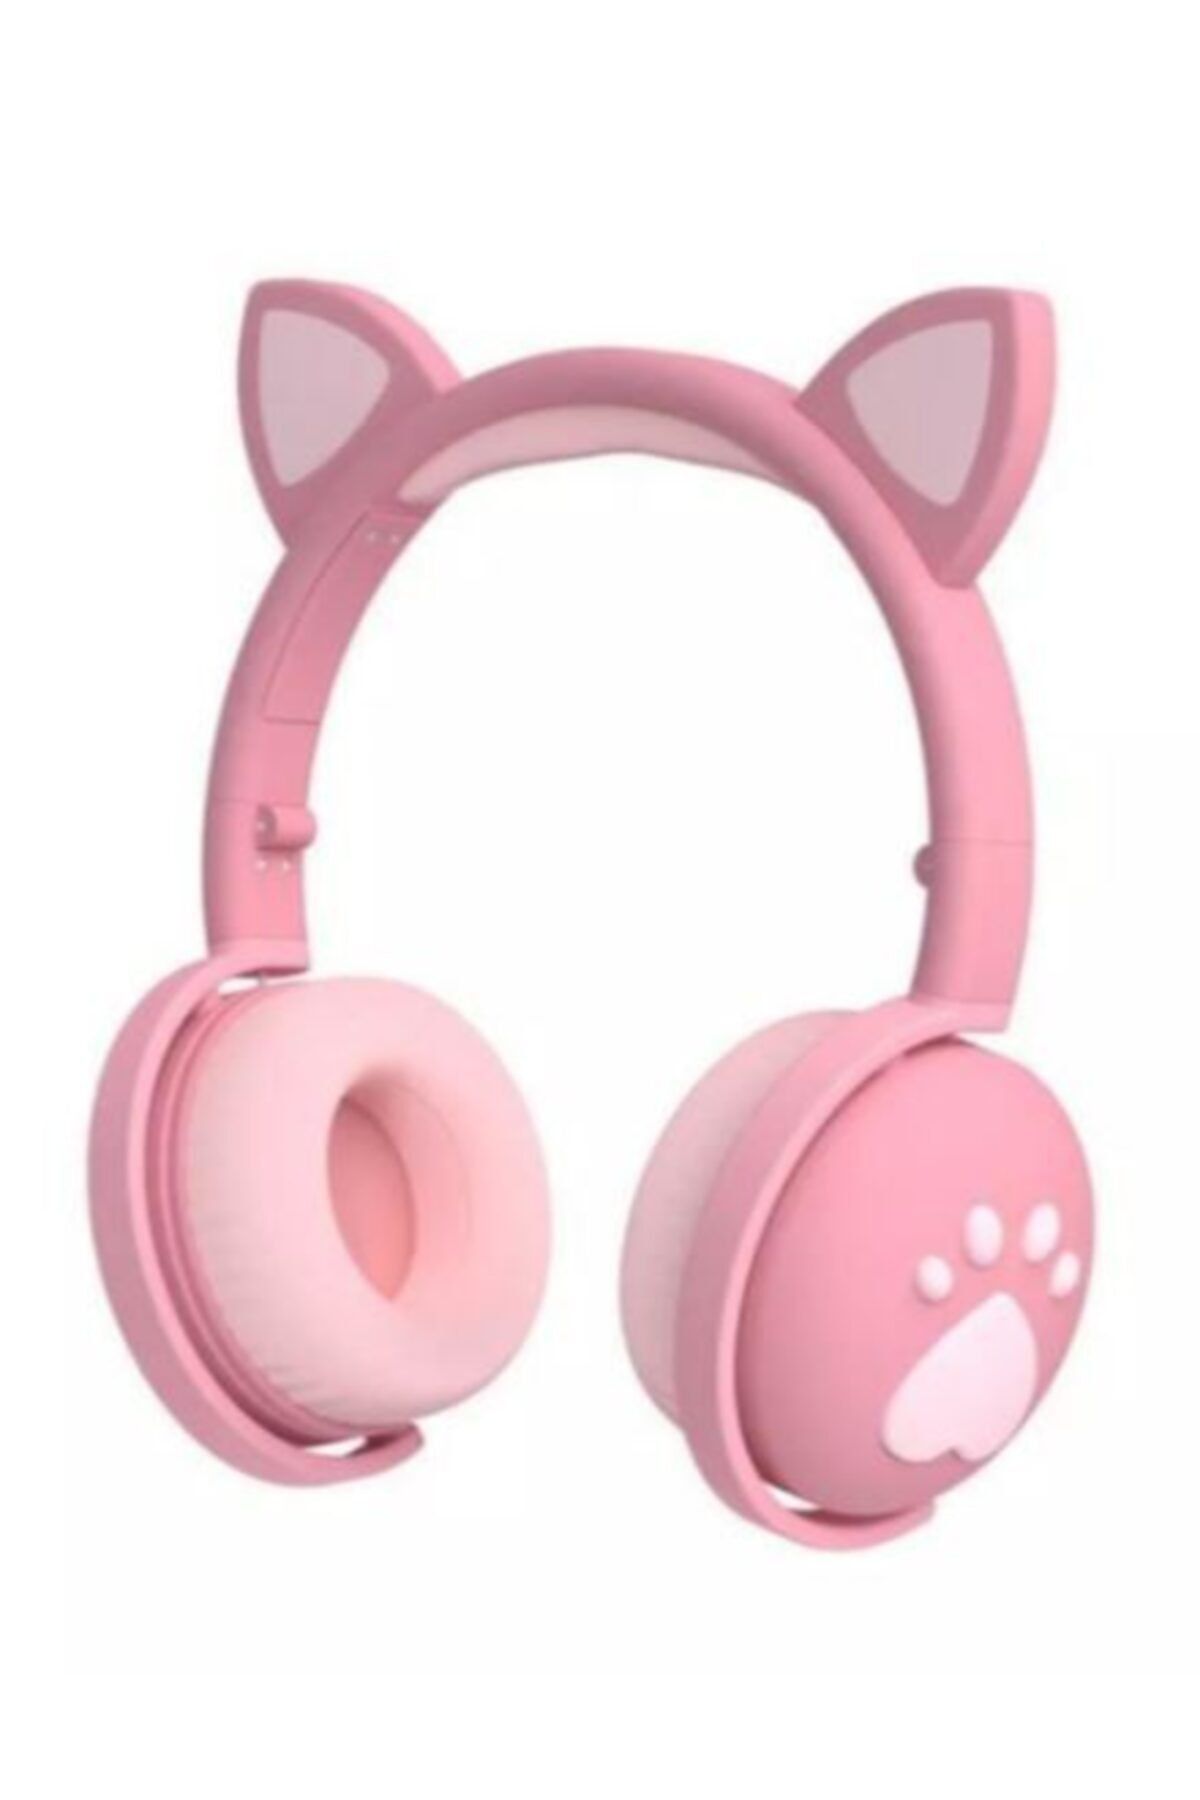 SbeeS Full Rgb Işıklı Pembe Kedi Kulak Bluetooth 5.0 Wıreless Kulaklık